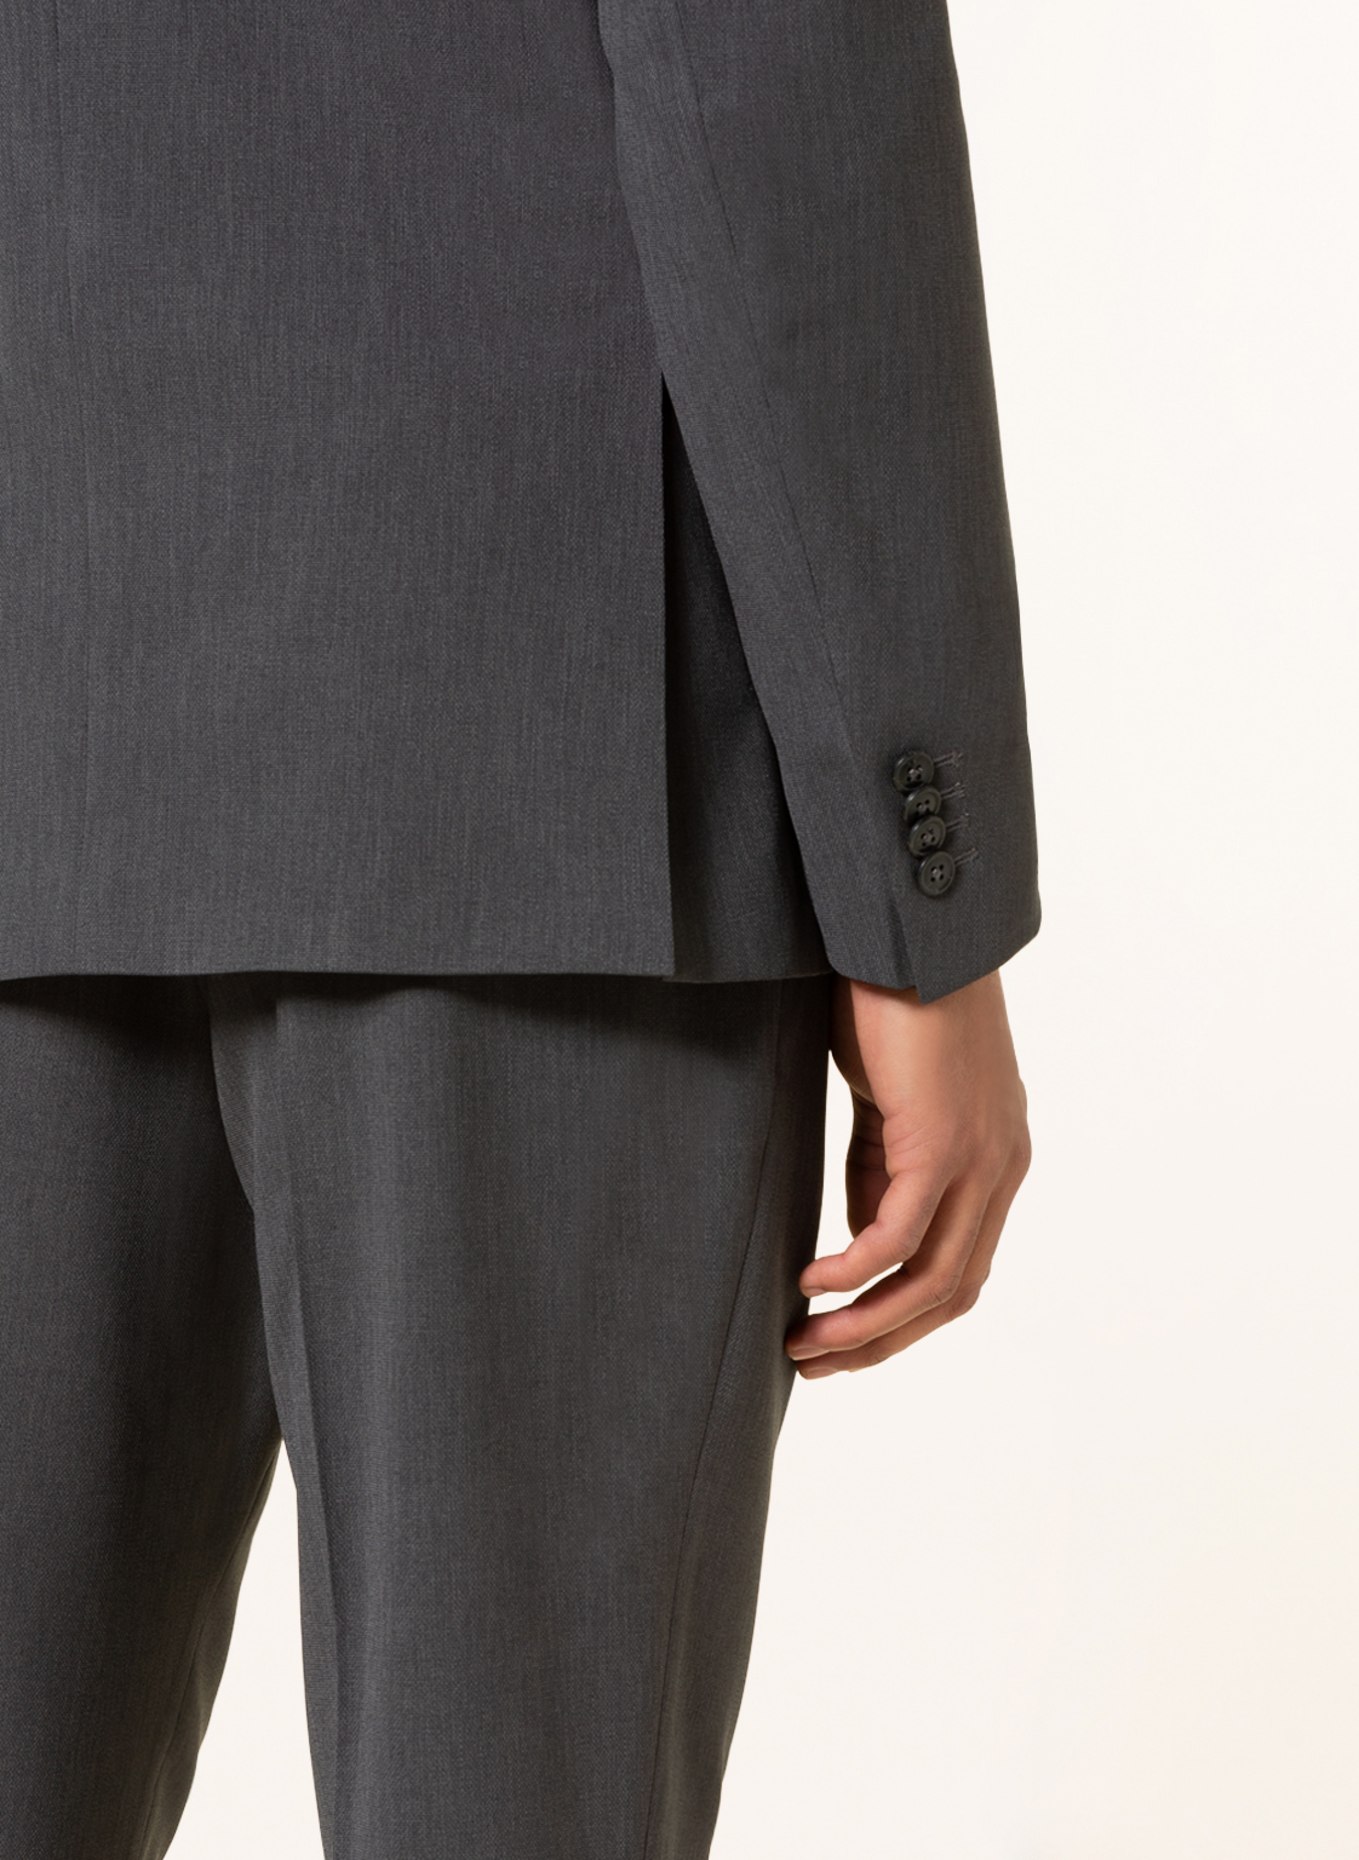 SPSR Suit jacket extra slim fit , Color: DARK GRAY (Image 6)